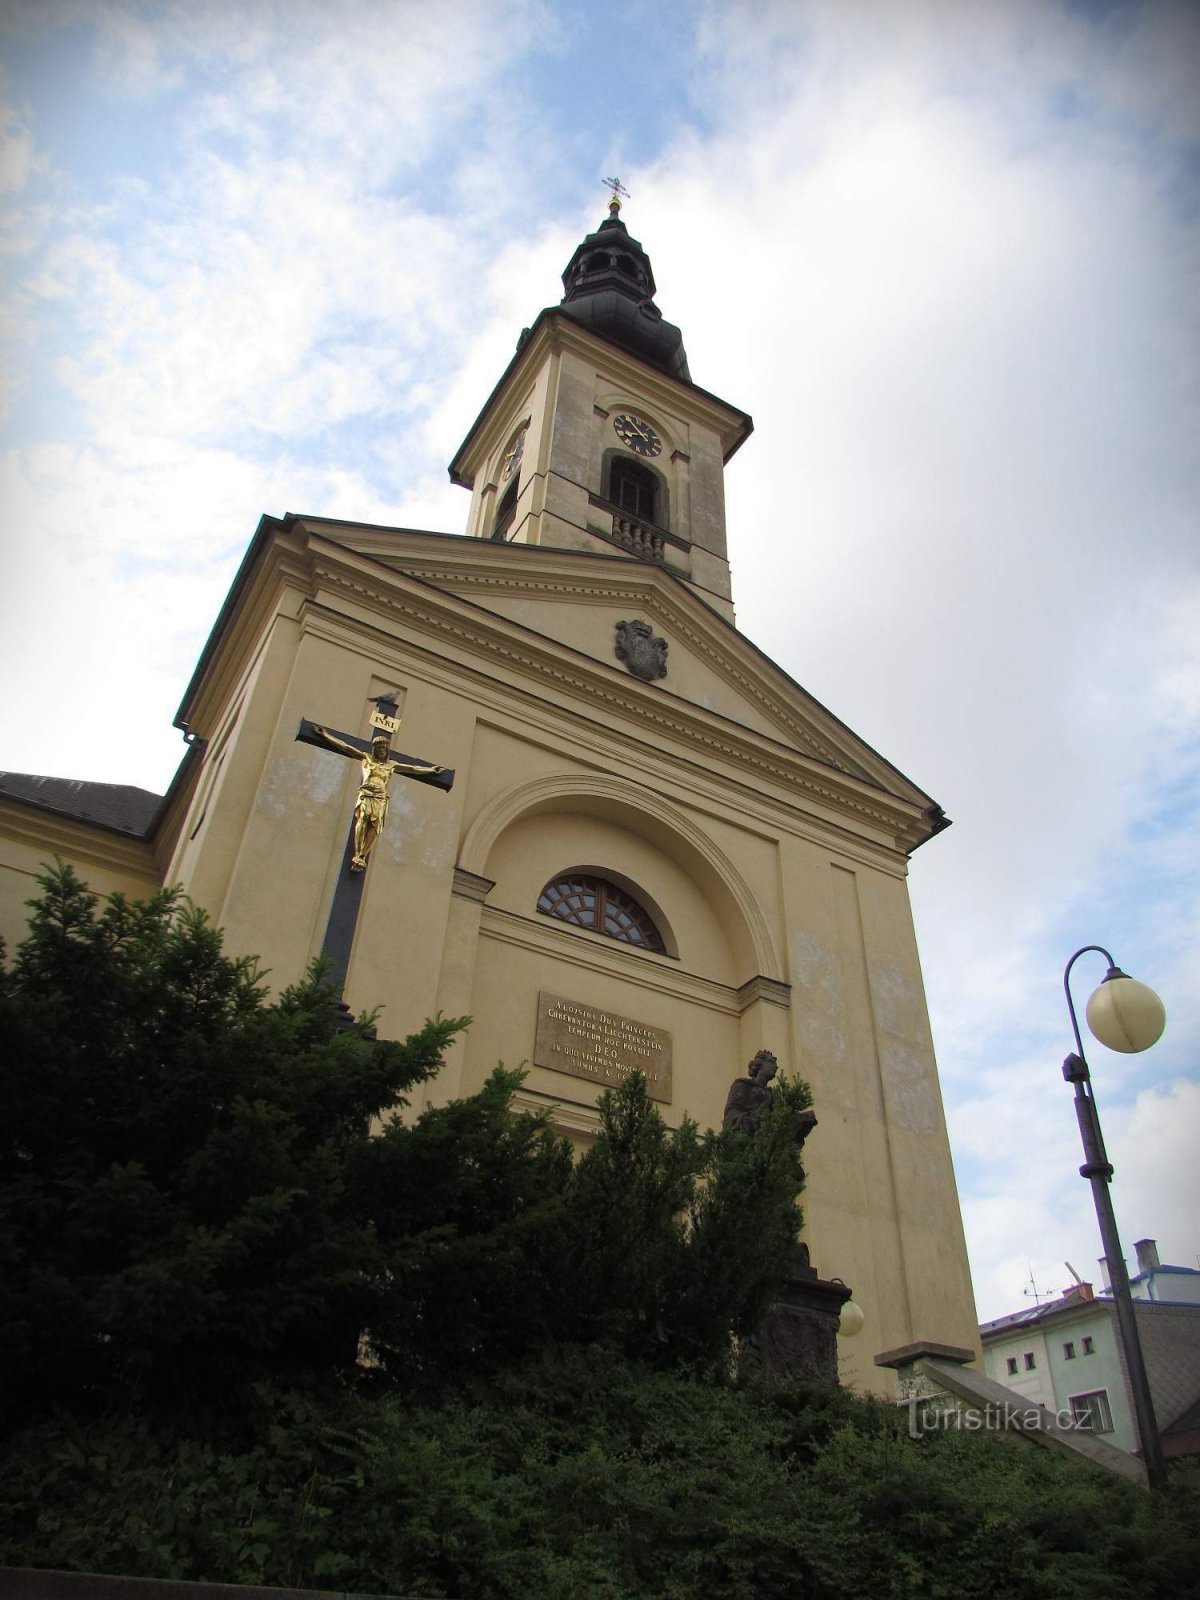 Česká Třebová - Chiesa di San Giacomo del decano